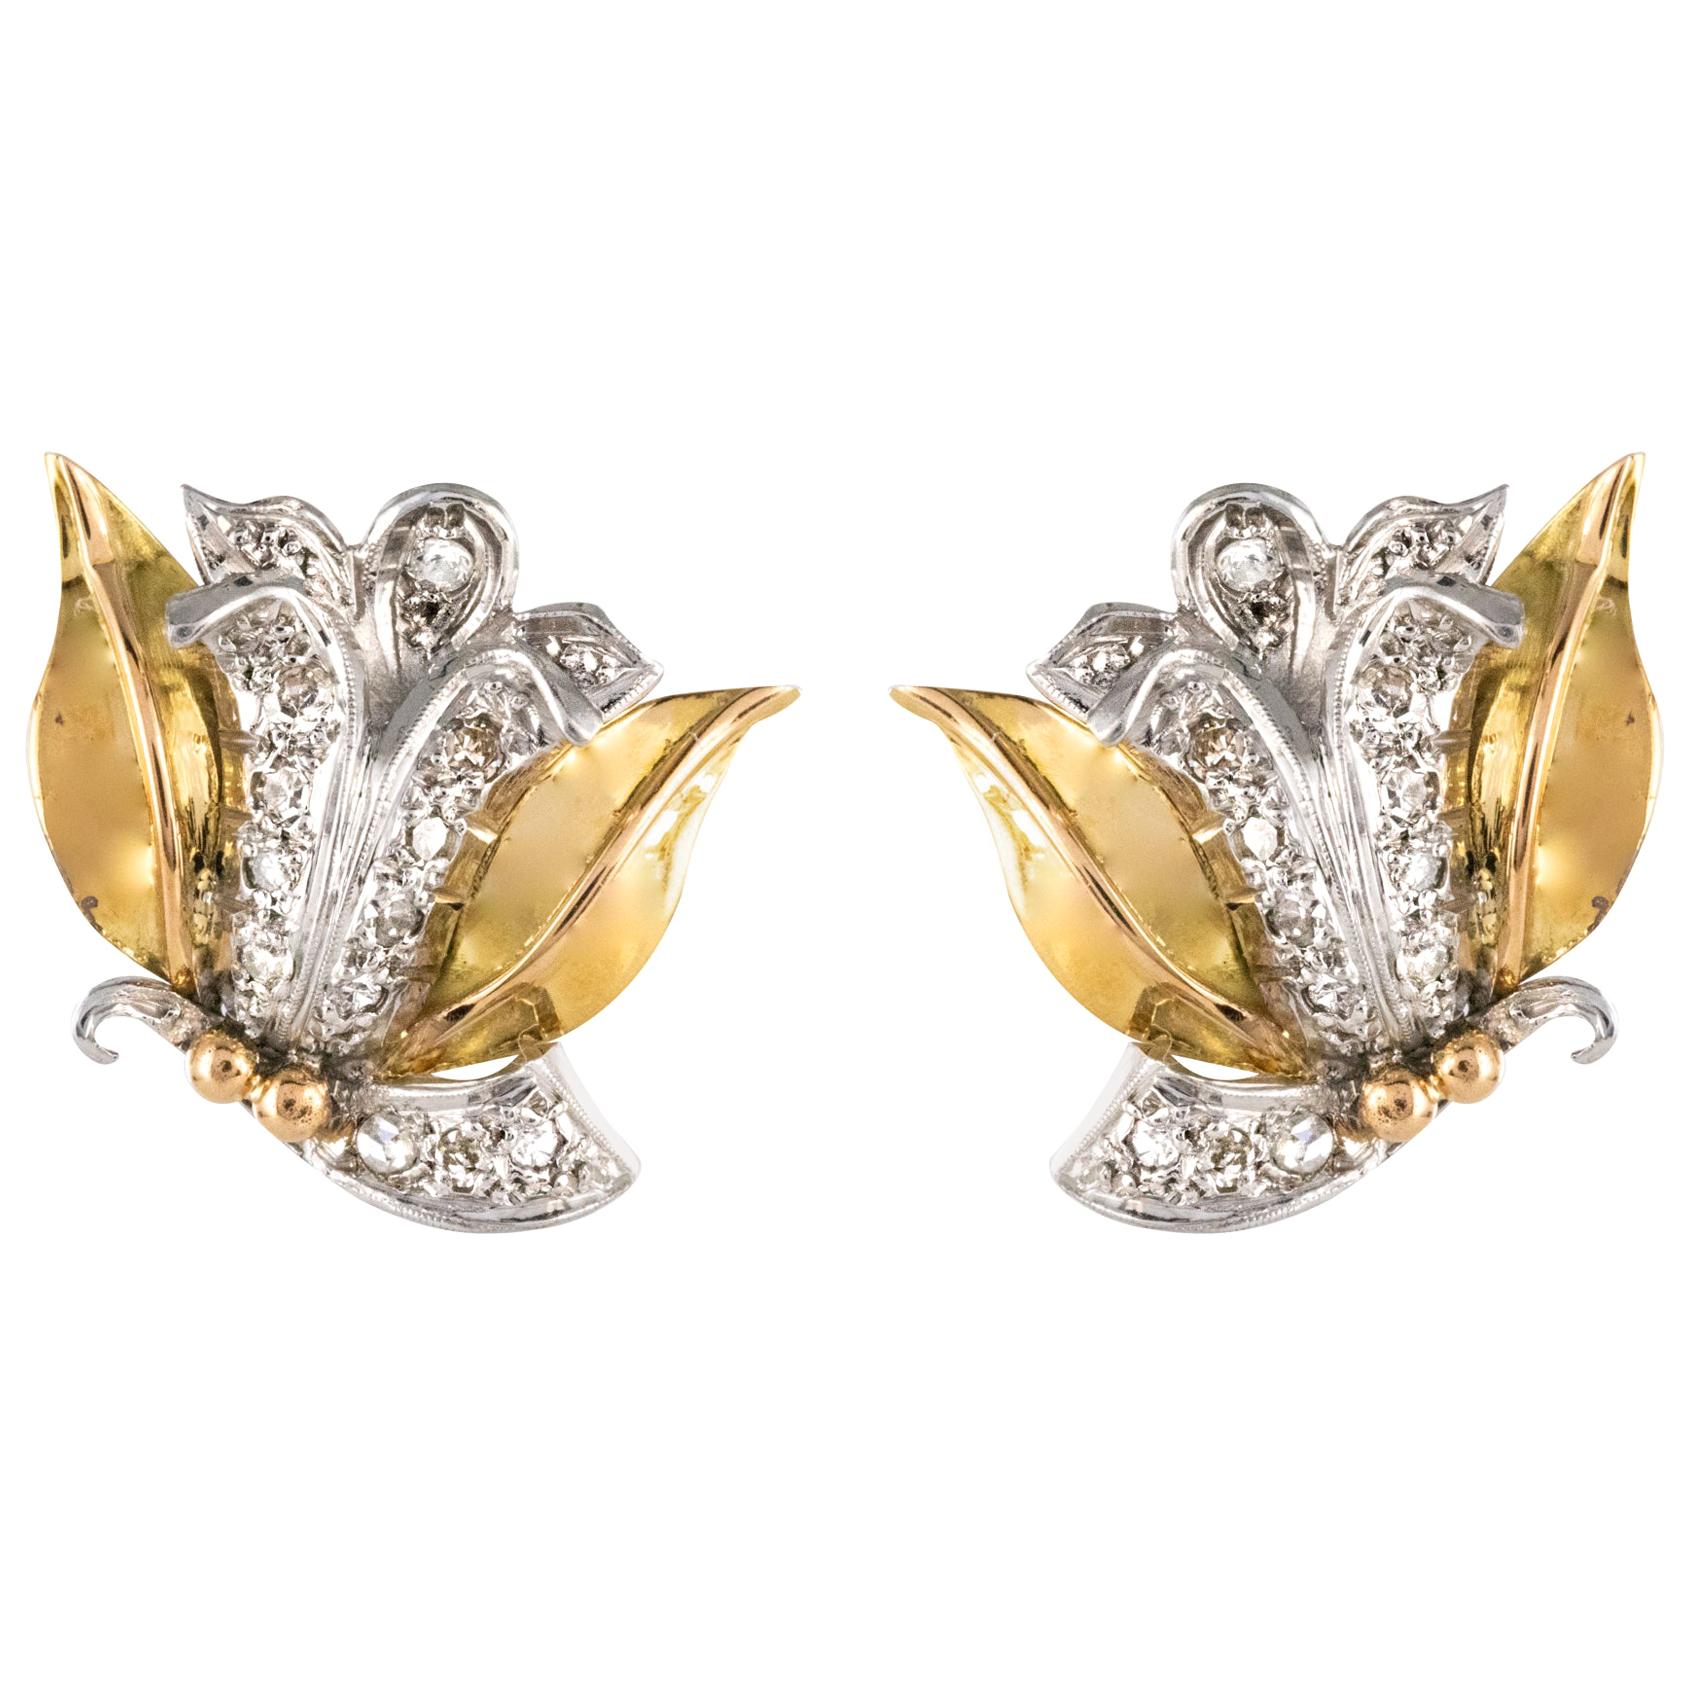 1950s Retro Diamonds 18 Karat Yellow White Gold Flower Shape Earrings For Sale